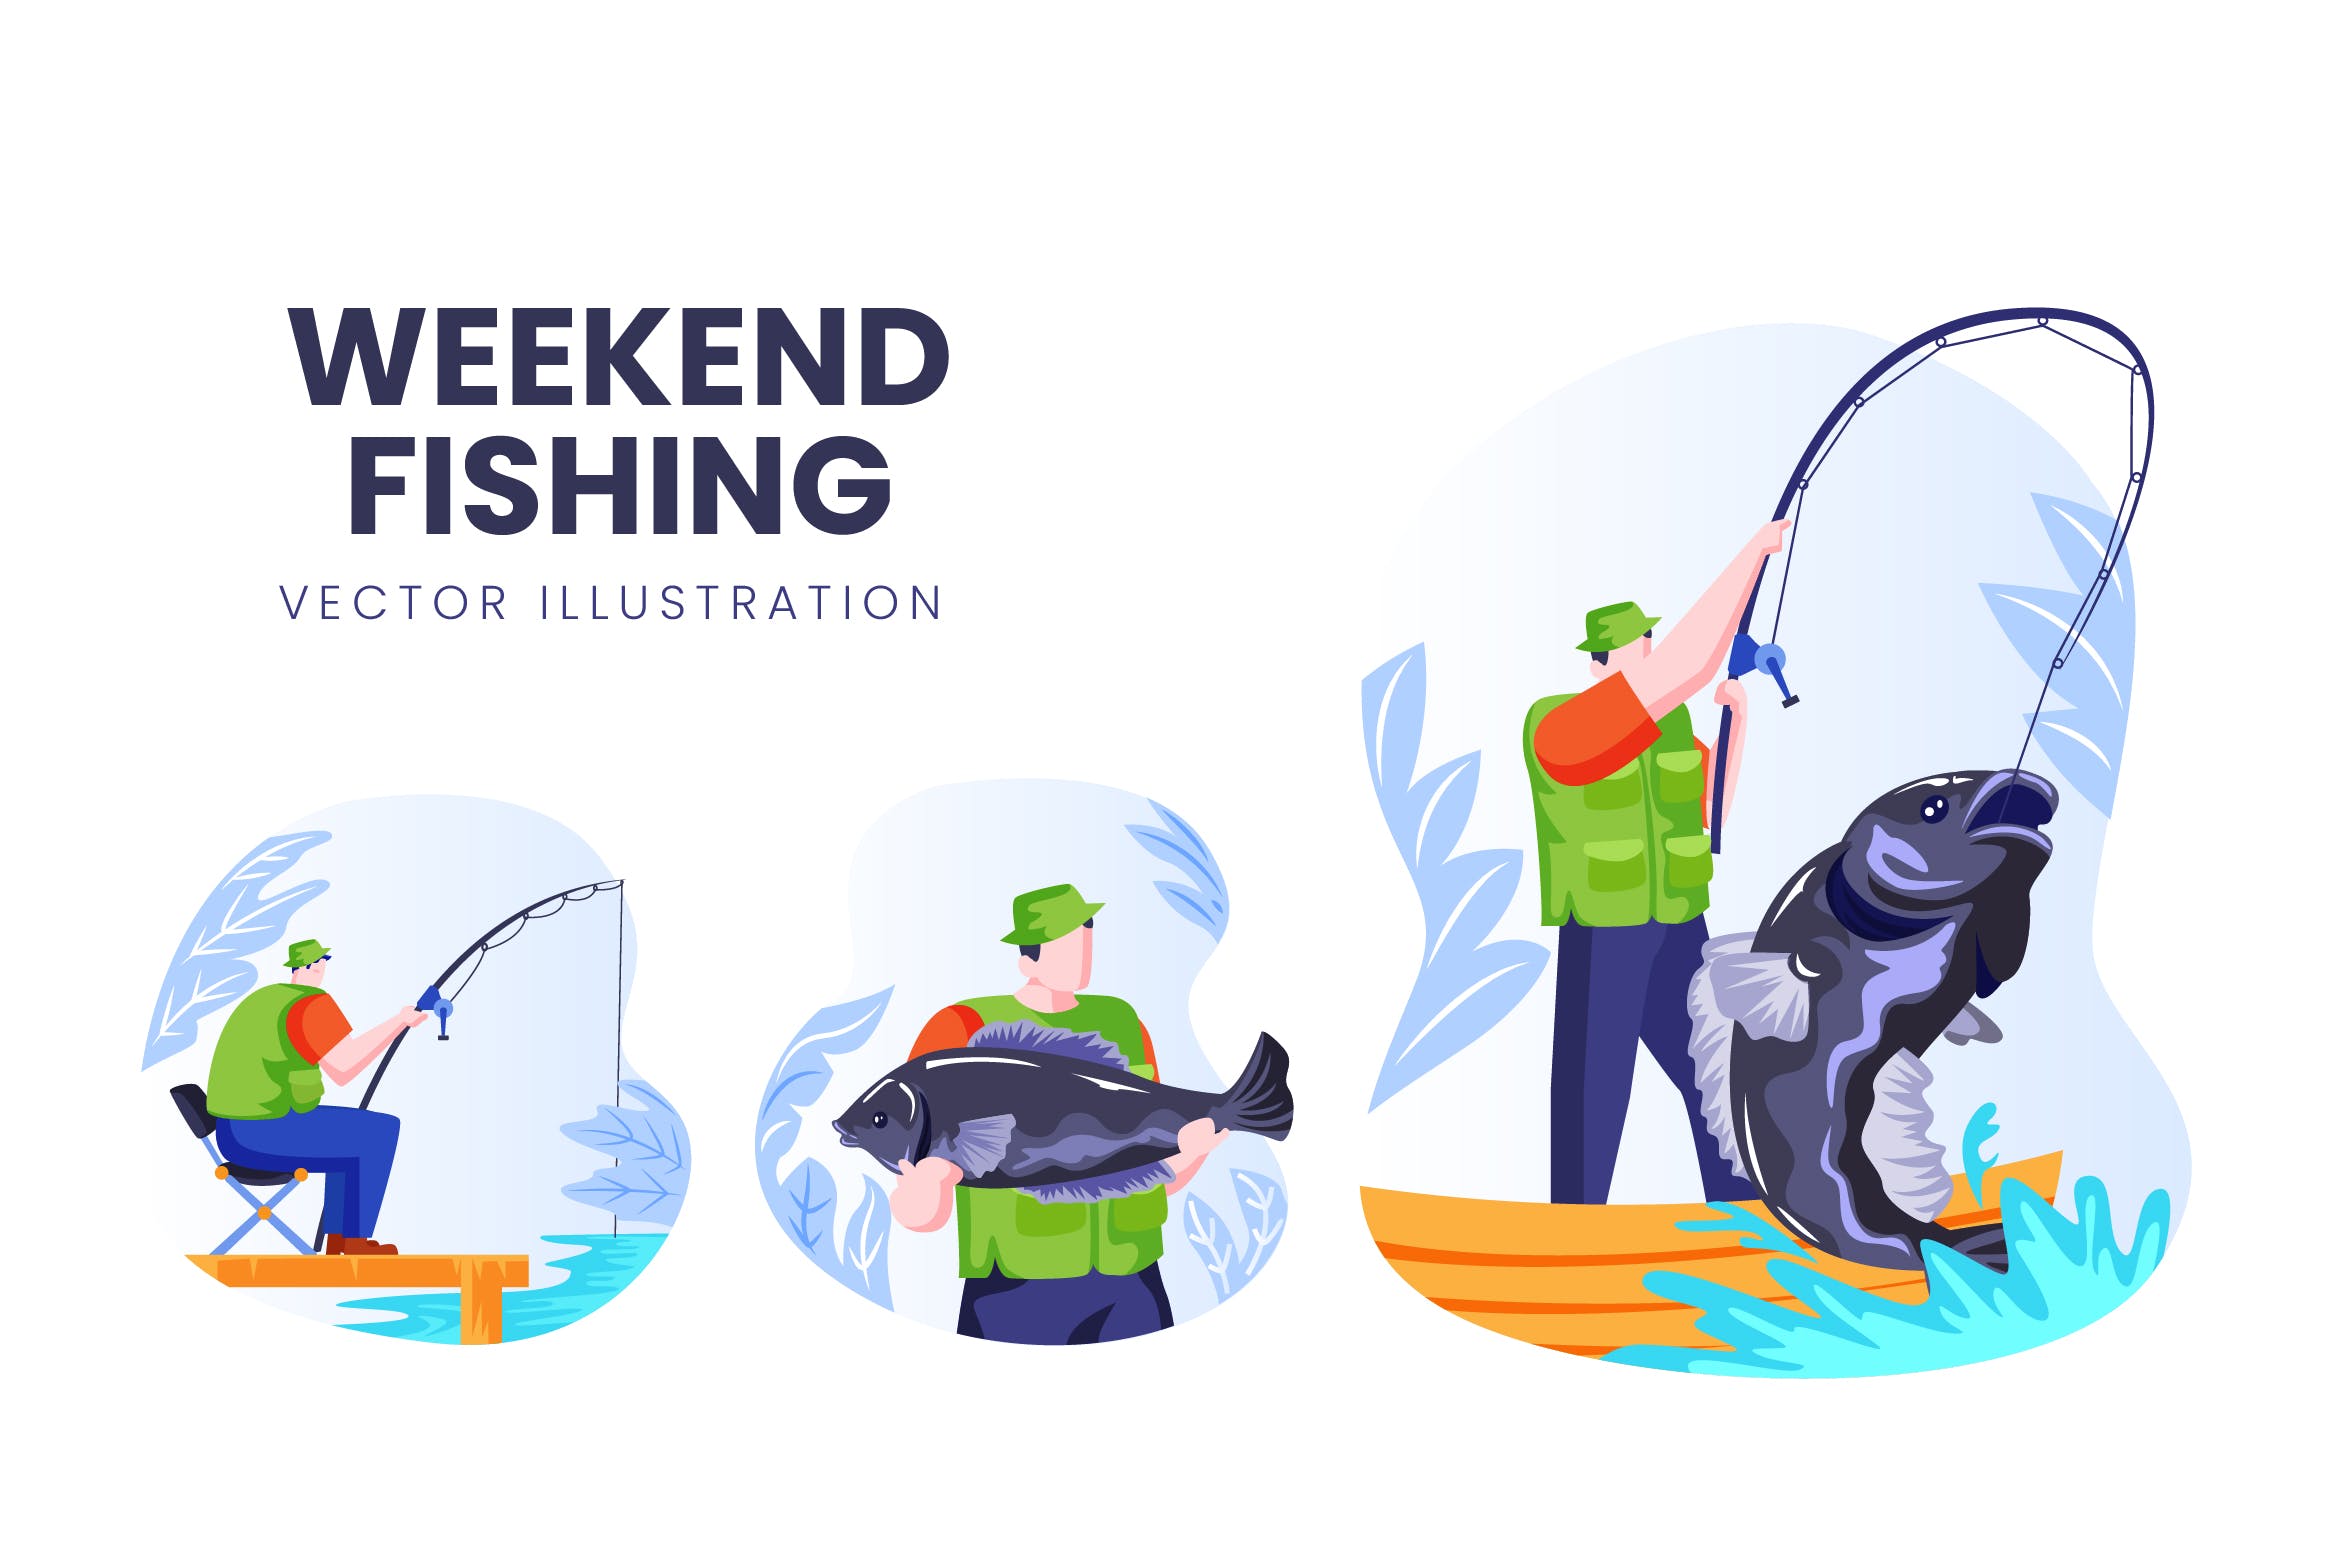 钓鱼爱好者人物形象大洋岛精选手绘插画矢量素材 Weekend Fishing Vector Character Set插图